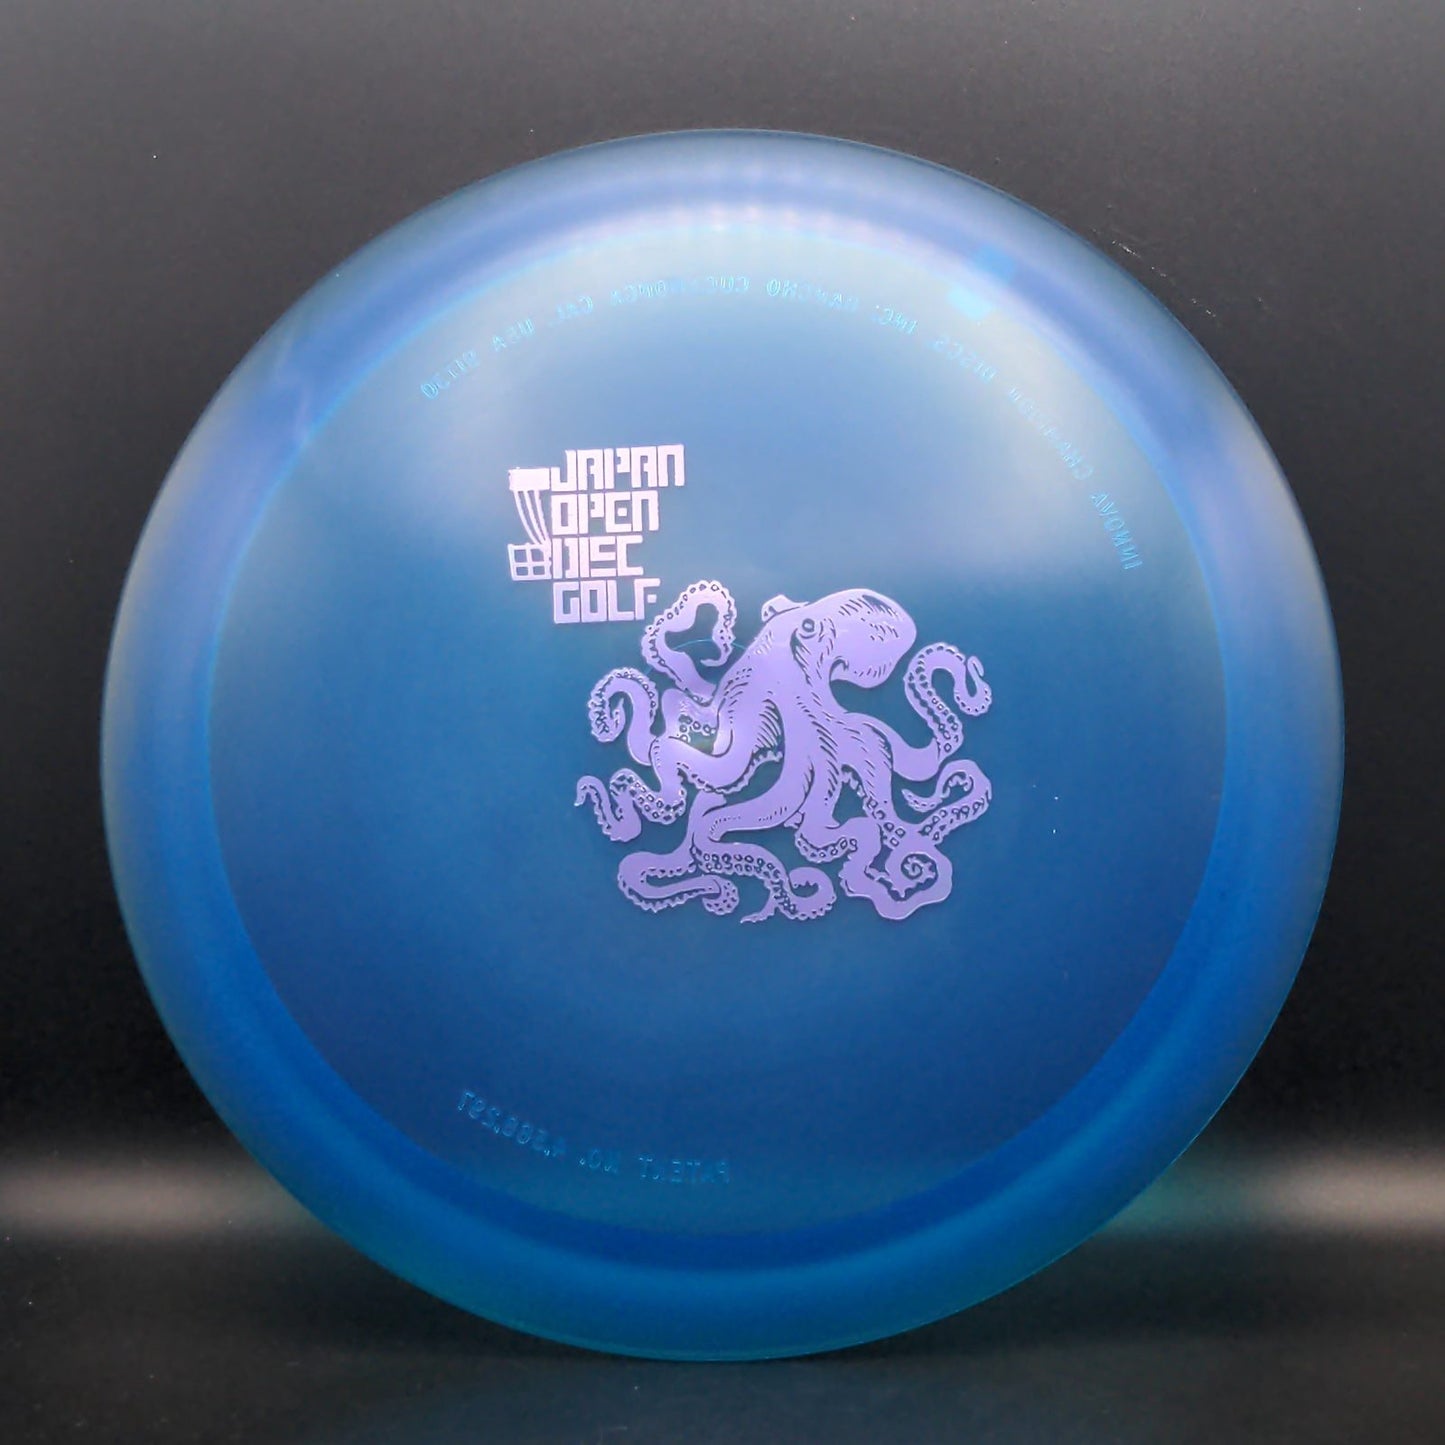 Champion Teebird+ - 2014 Japan Open Octopus - RARE! Innova